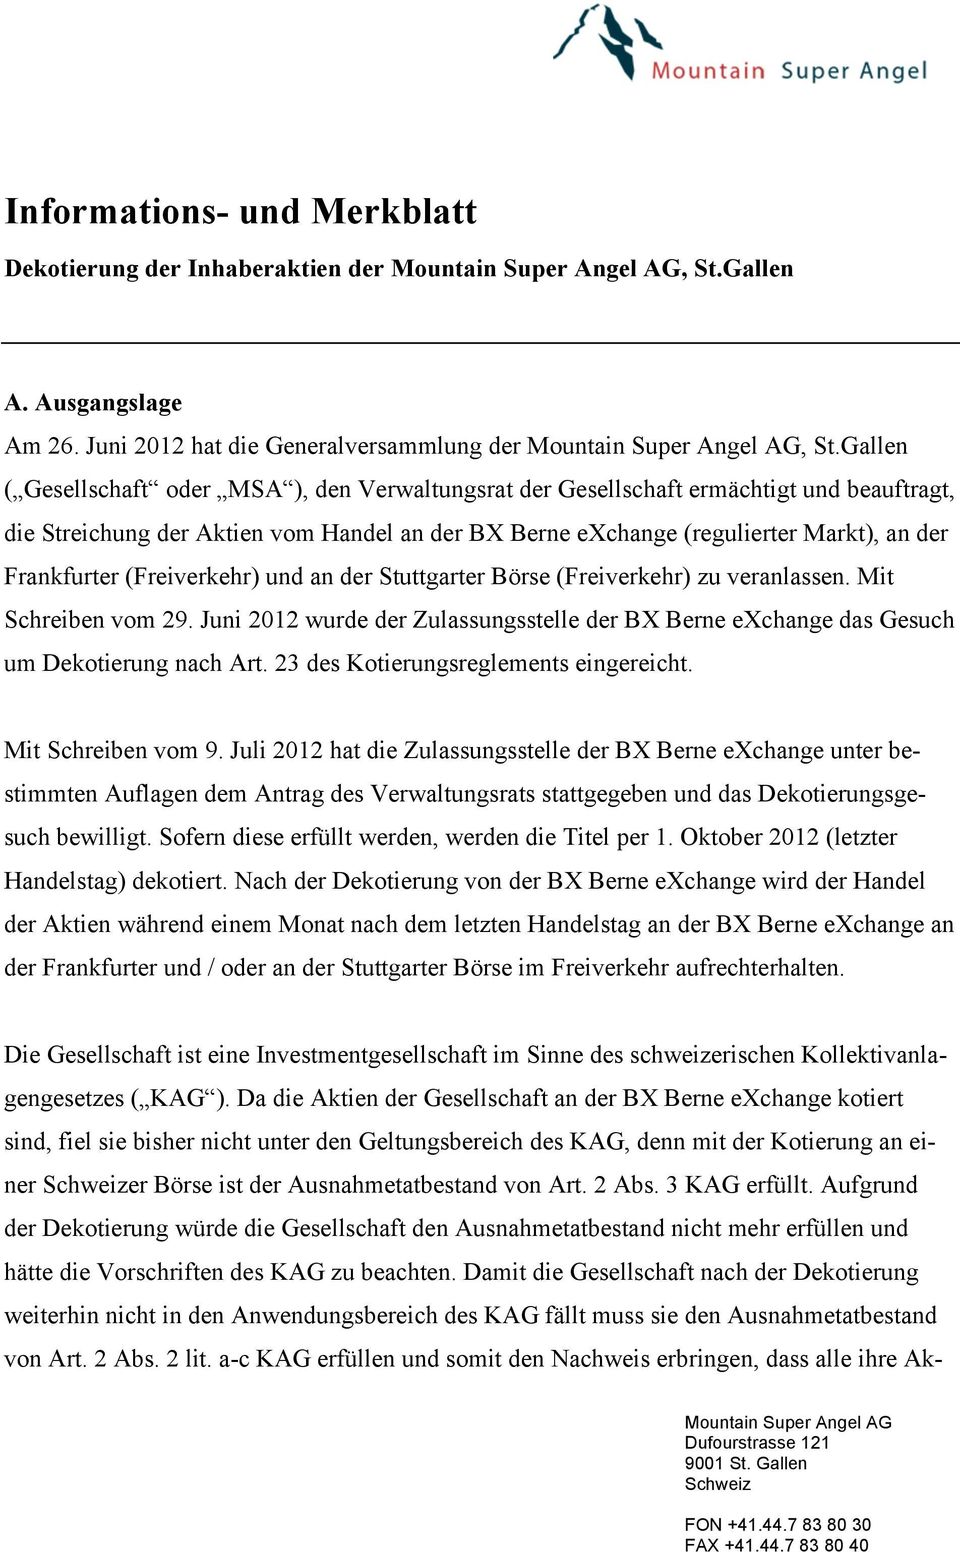 (Freiverkehr) und an der Stuttgarter Börse (Freiverkehr) zu veranlassen. Mit Schreiben vom 29. Juni 2012 wurde der Zulassungsstelle der BX Berne exchange das Gesuch um Dekotierung nach Art.